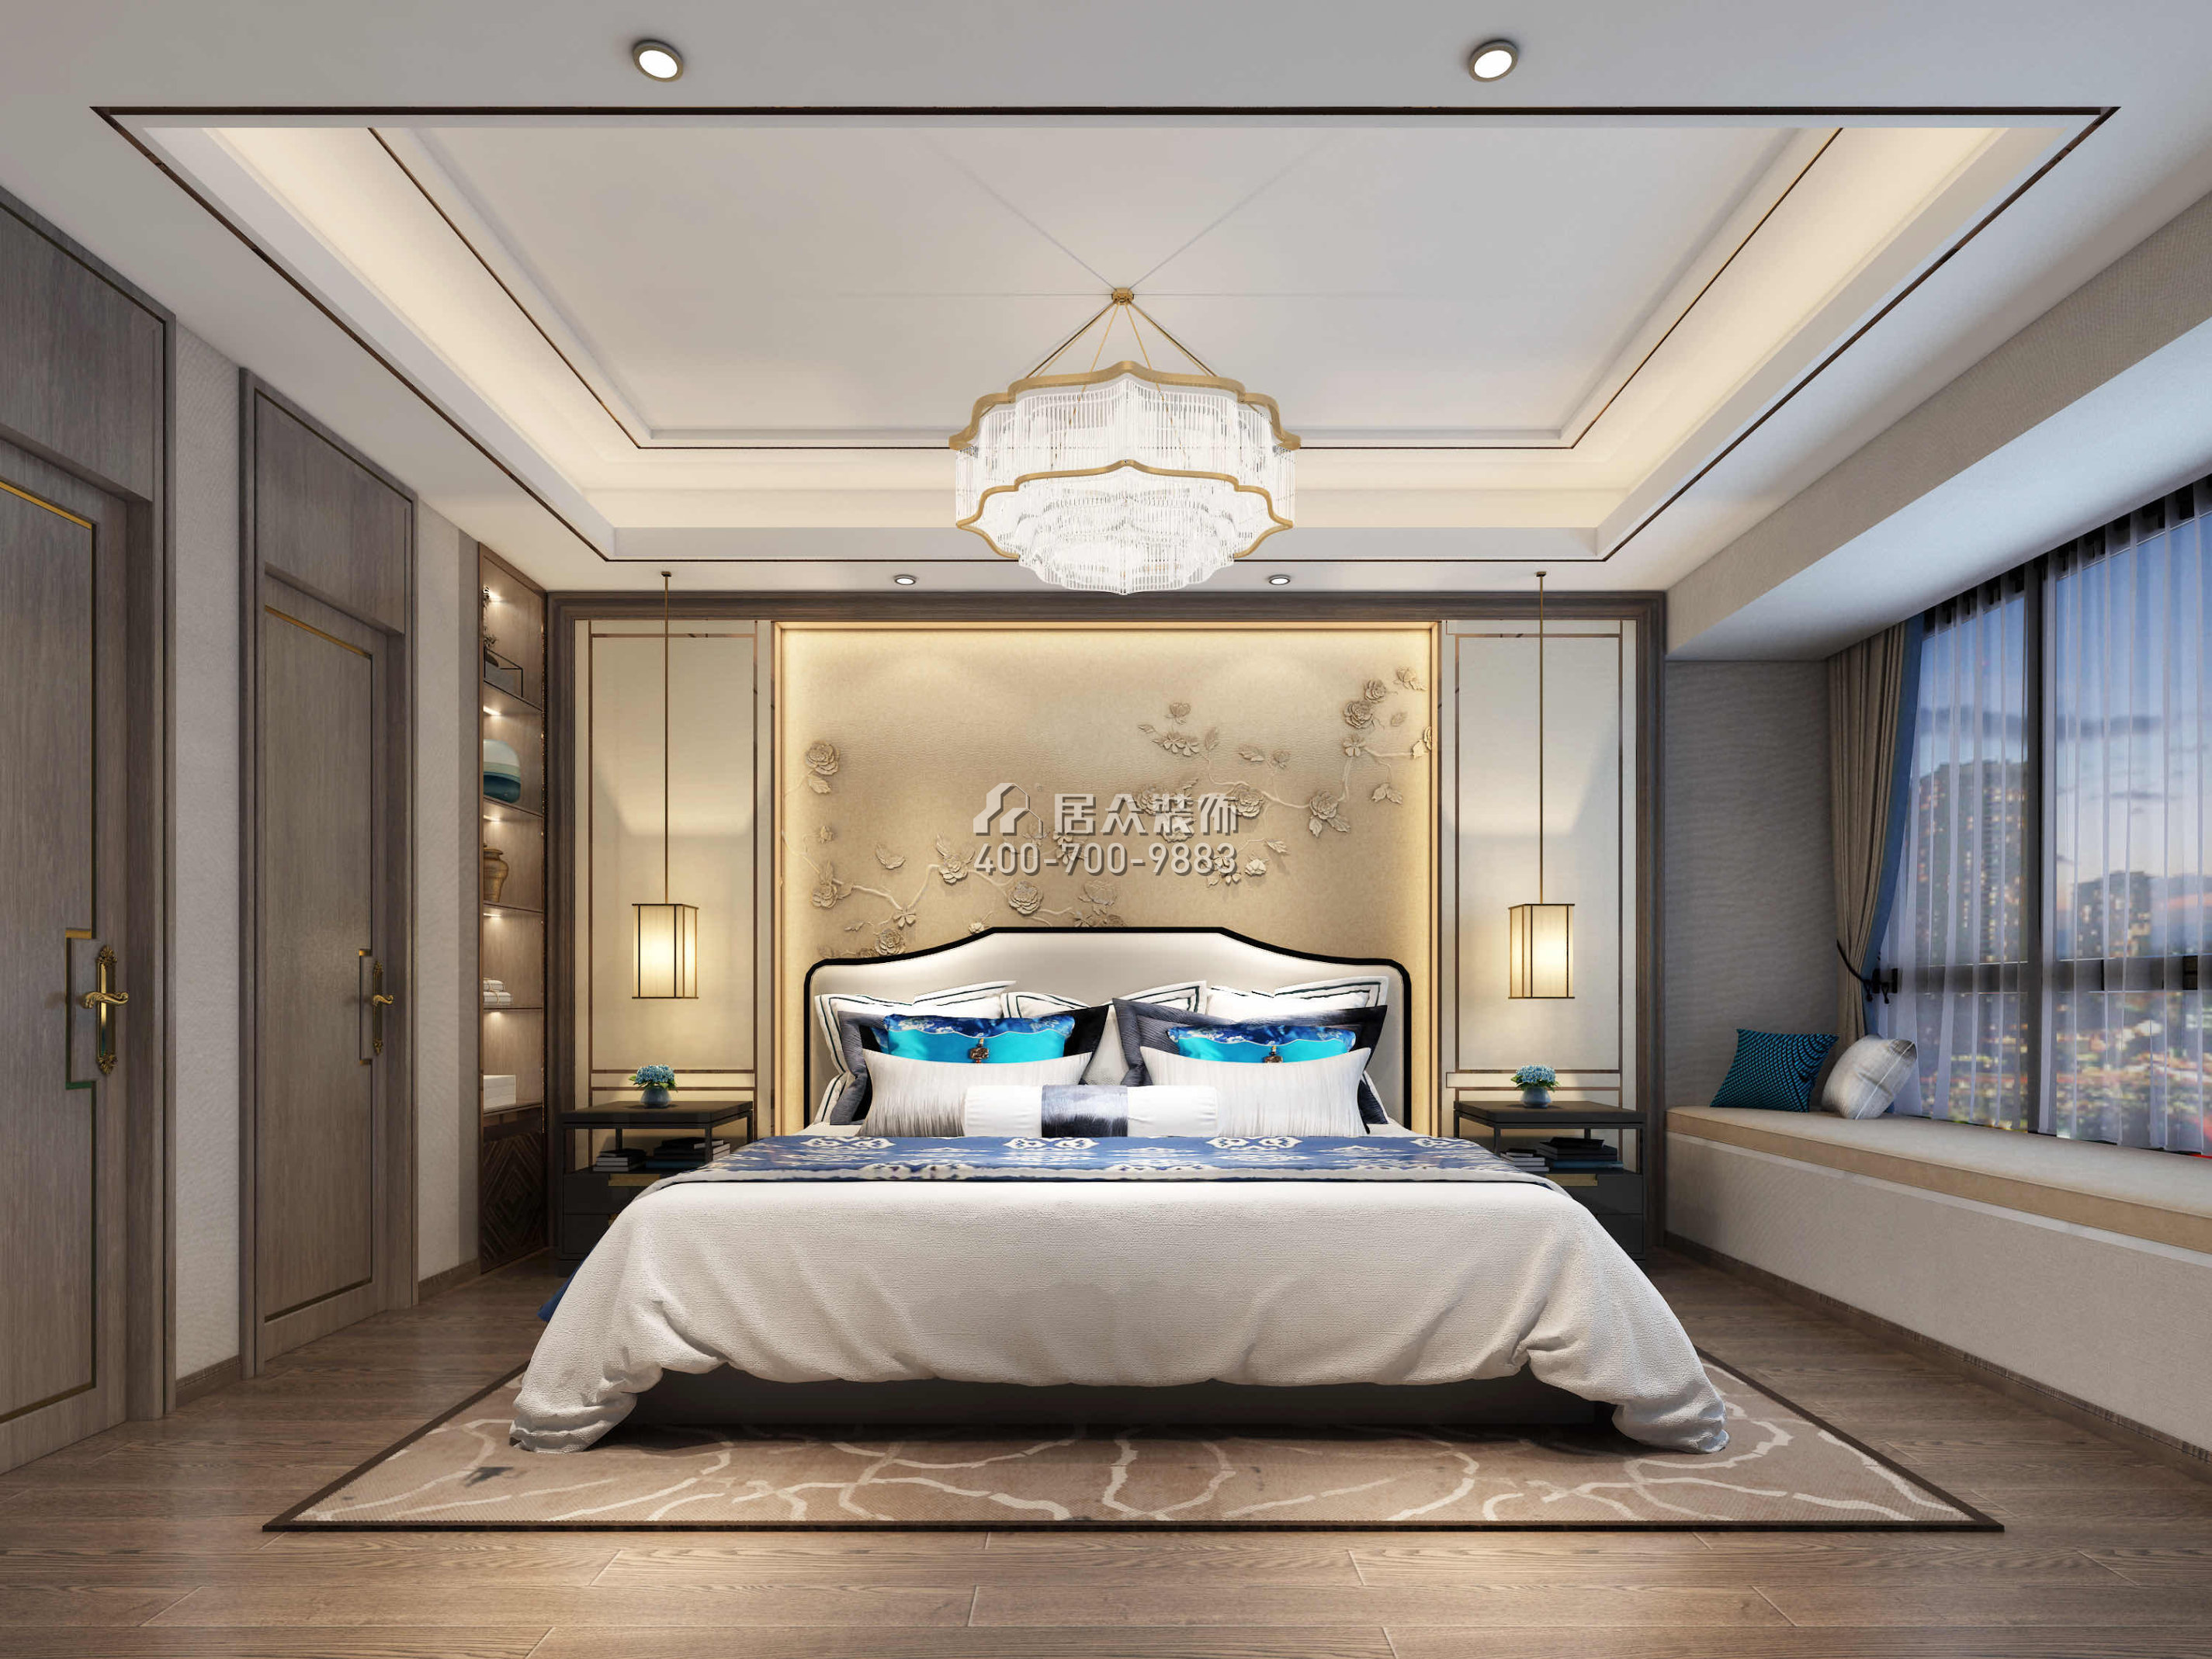 香山美墅五期165平方米中式风格平层户型卧室装修效果图